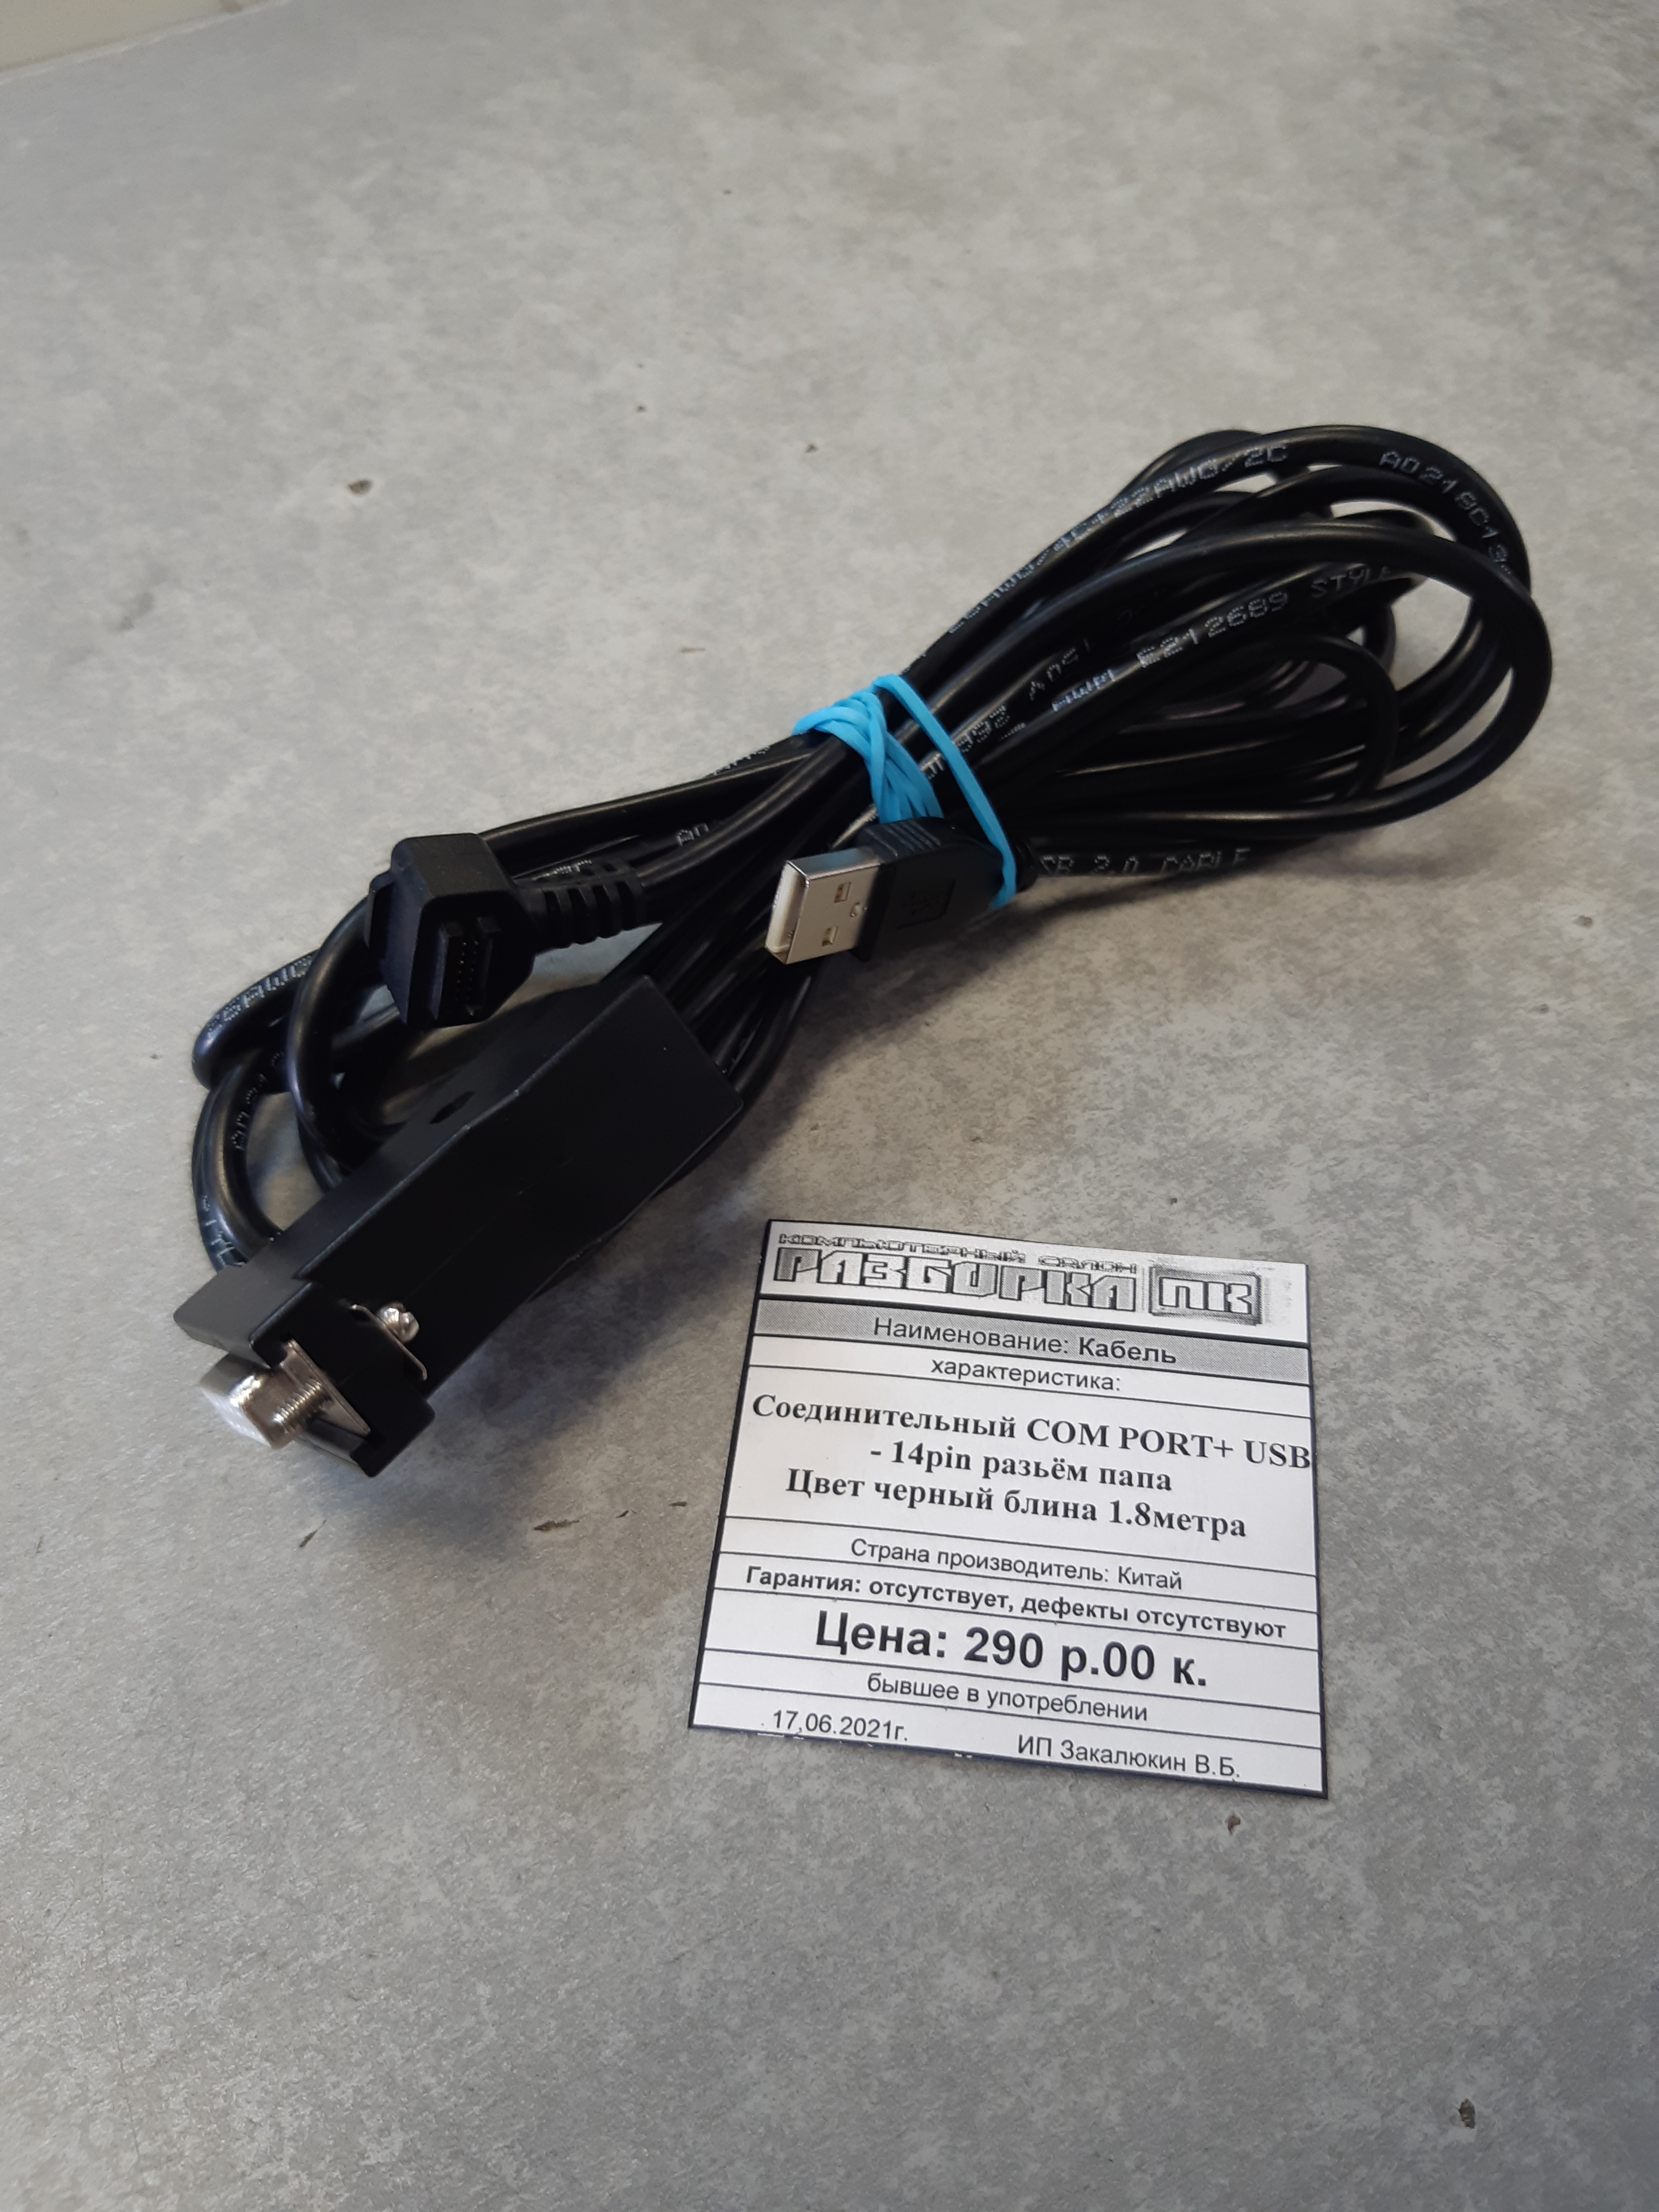 Кабель соединительный СOM PORT+ USB-14pin разъем